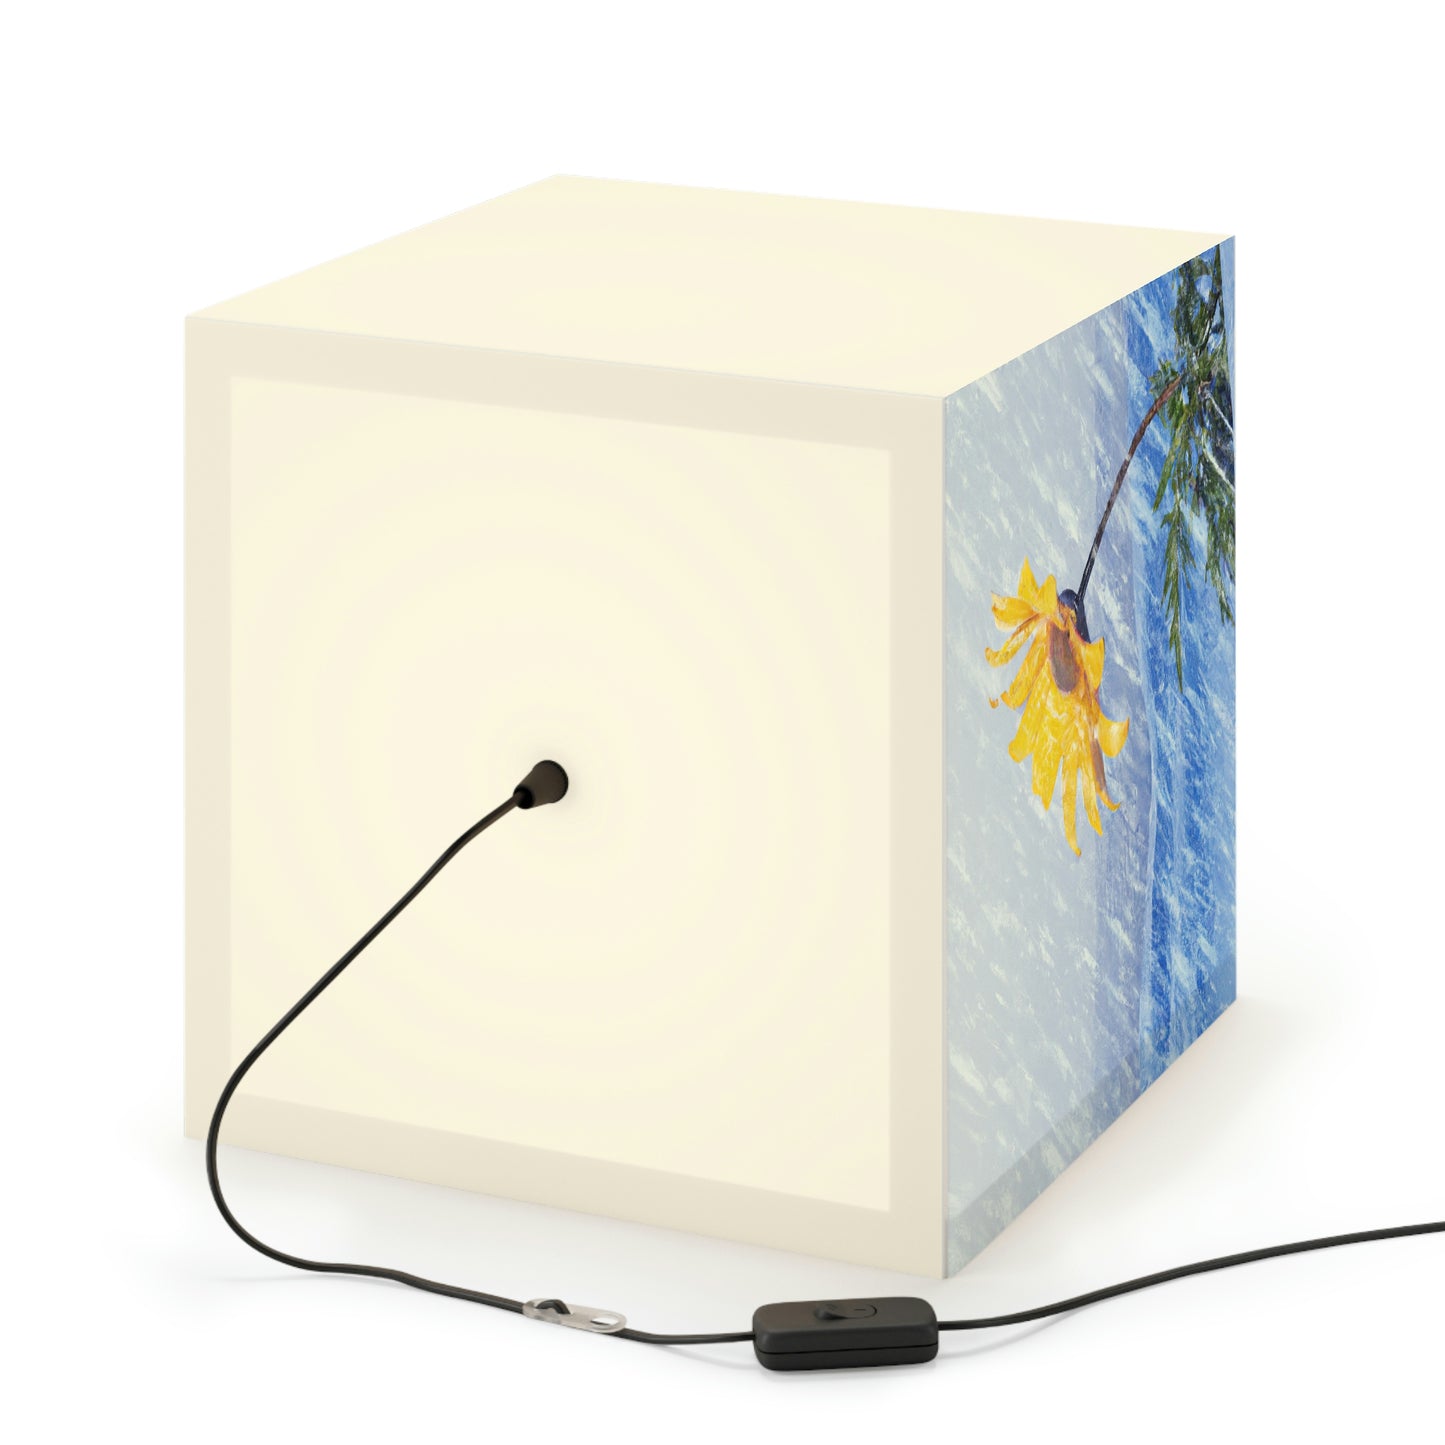 "Eine Farbexplosion im gleißenden Weiß: Das Wunder einer Blume, die in einem Schneesturm erblüht" - Die Alien Light Cube Lampe